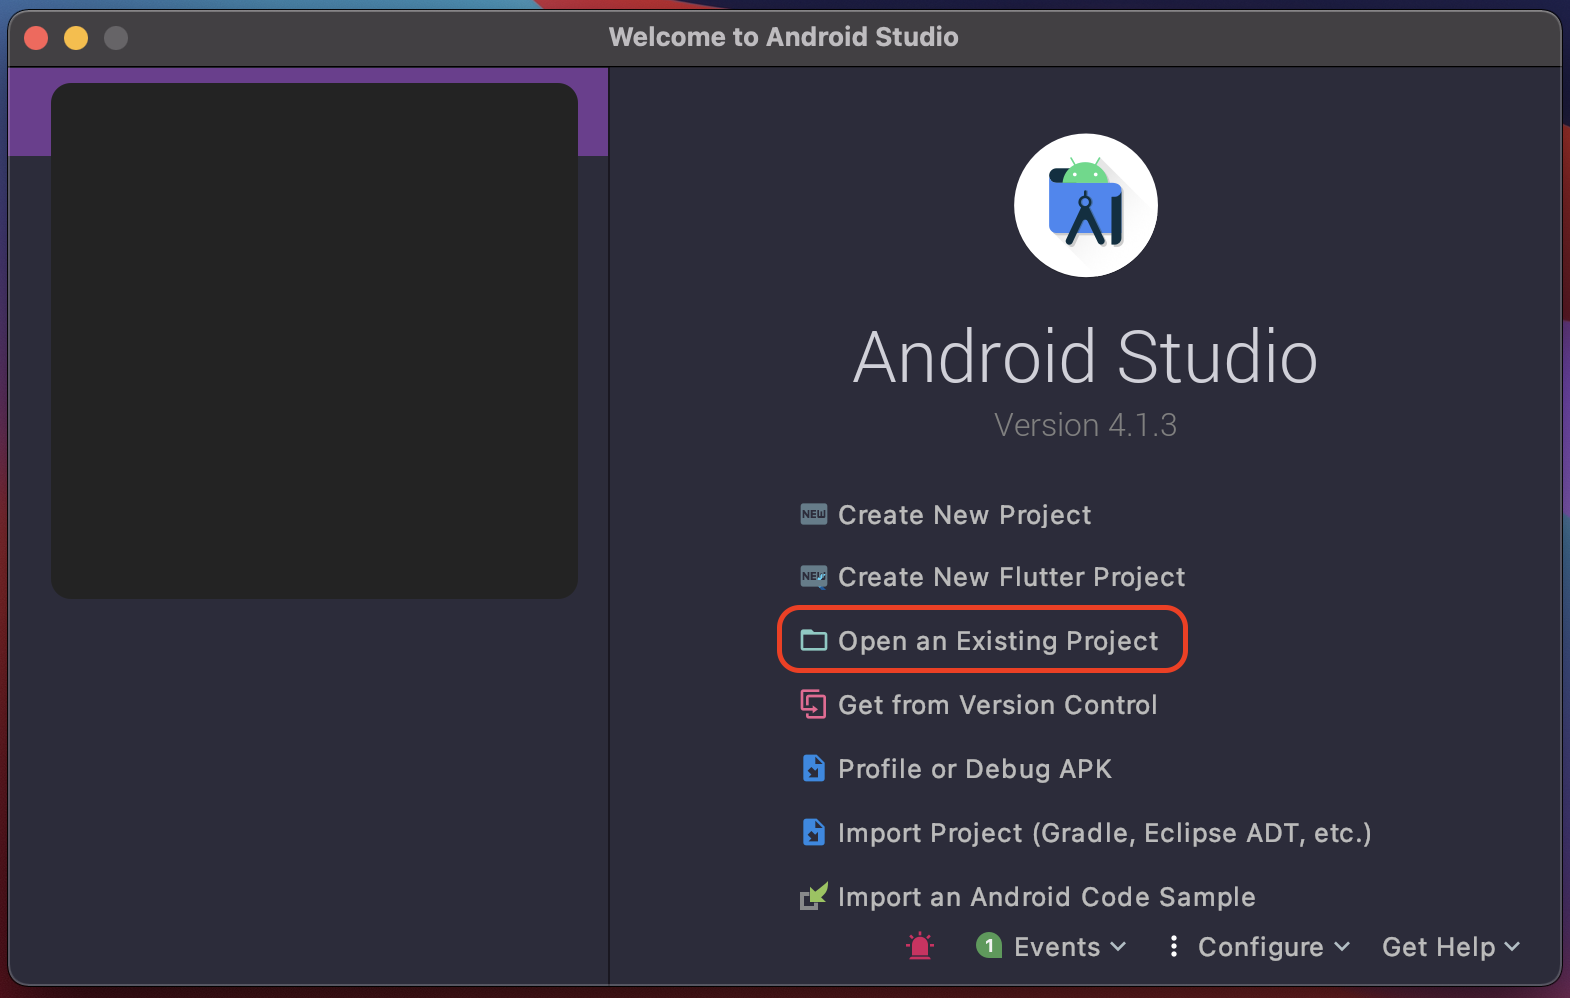 Android Studio Setup